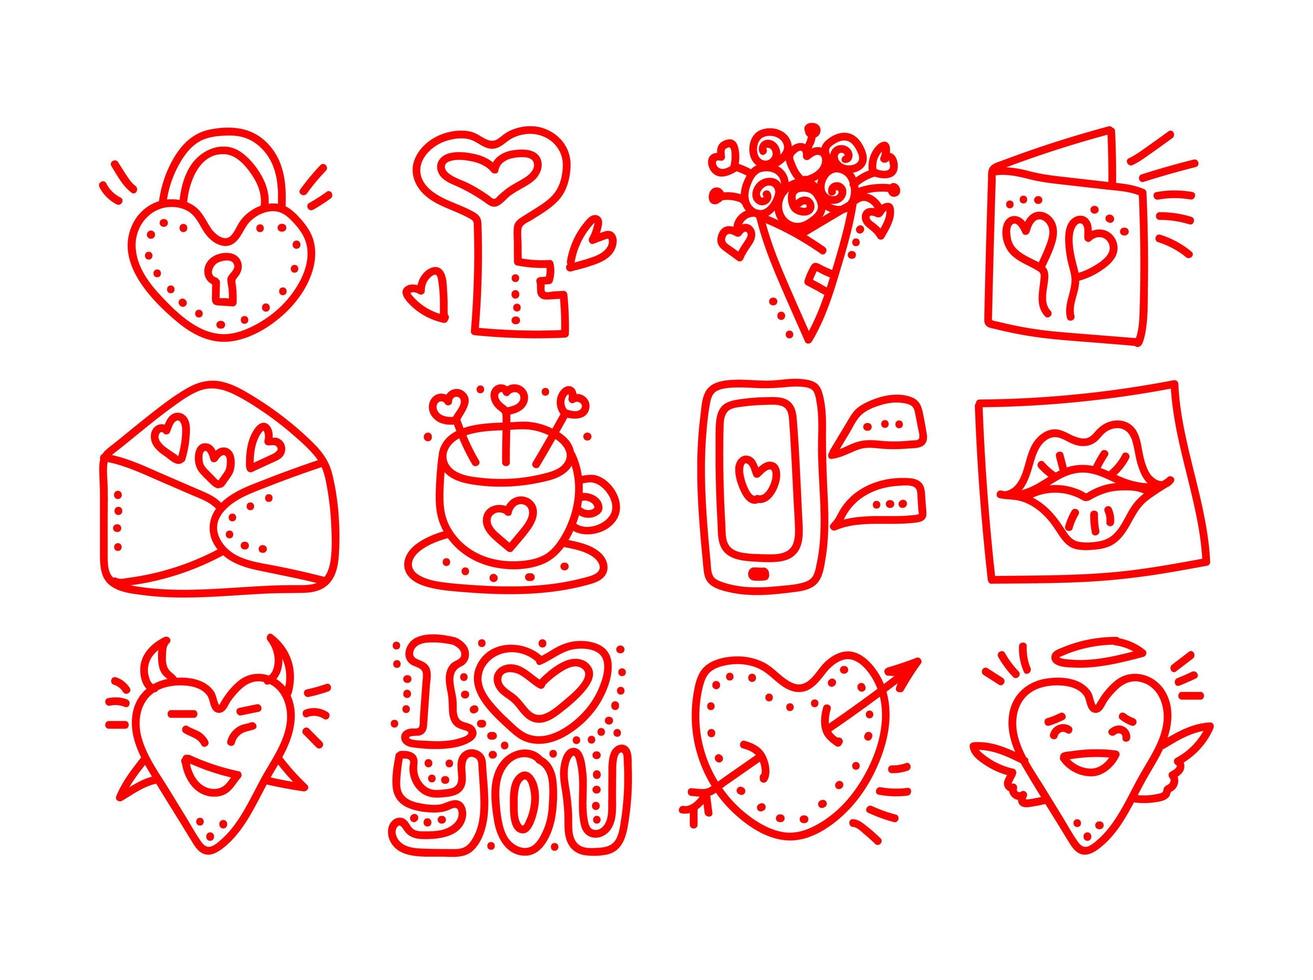 satz von handgezeichneten valentinstag-doodle-vektorsymbolen. valentinstag liebesherzen, becher, blumen, handy, lippen, briefe, engel, schloss, dämon, nachrichtensymbole vektor